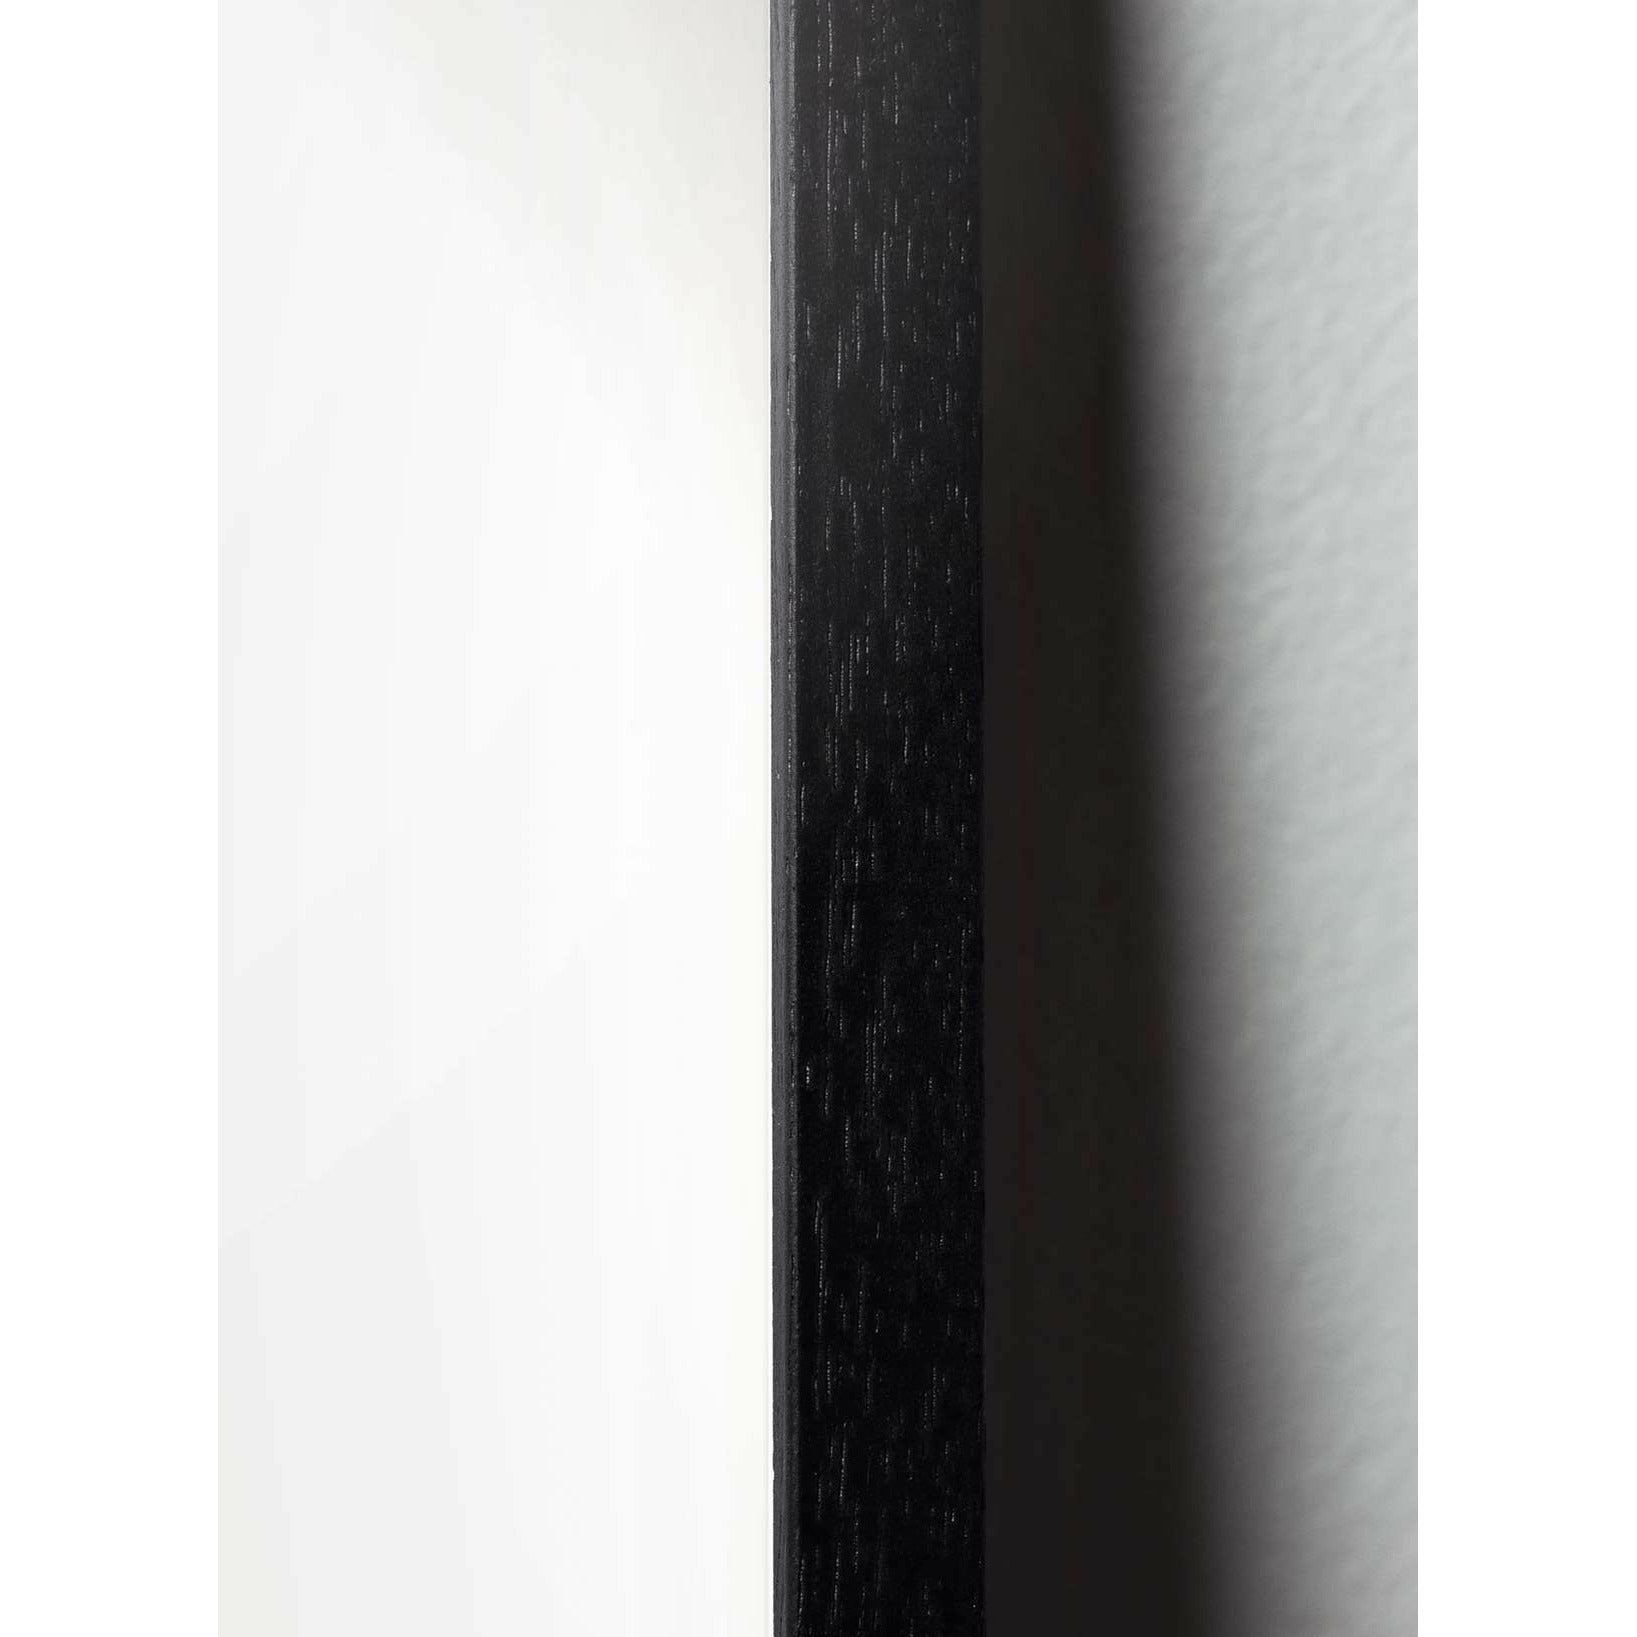 Plakát na linii borovice kužele, rám v černém lakovaném dřevu 70x100 cm, bílé pozadí